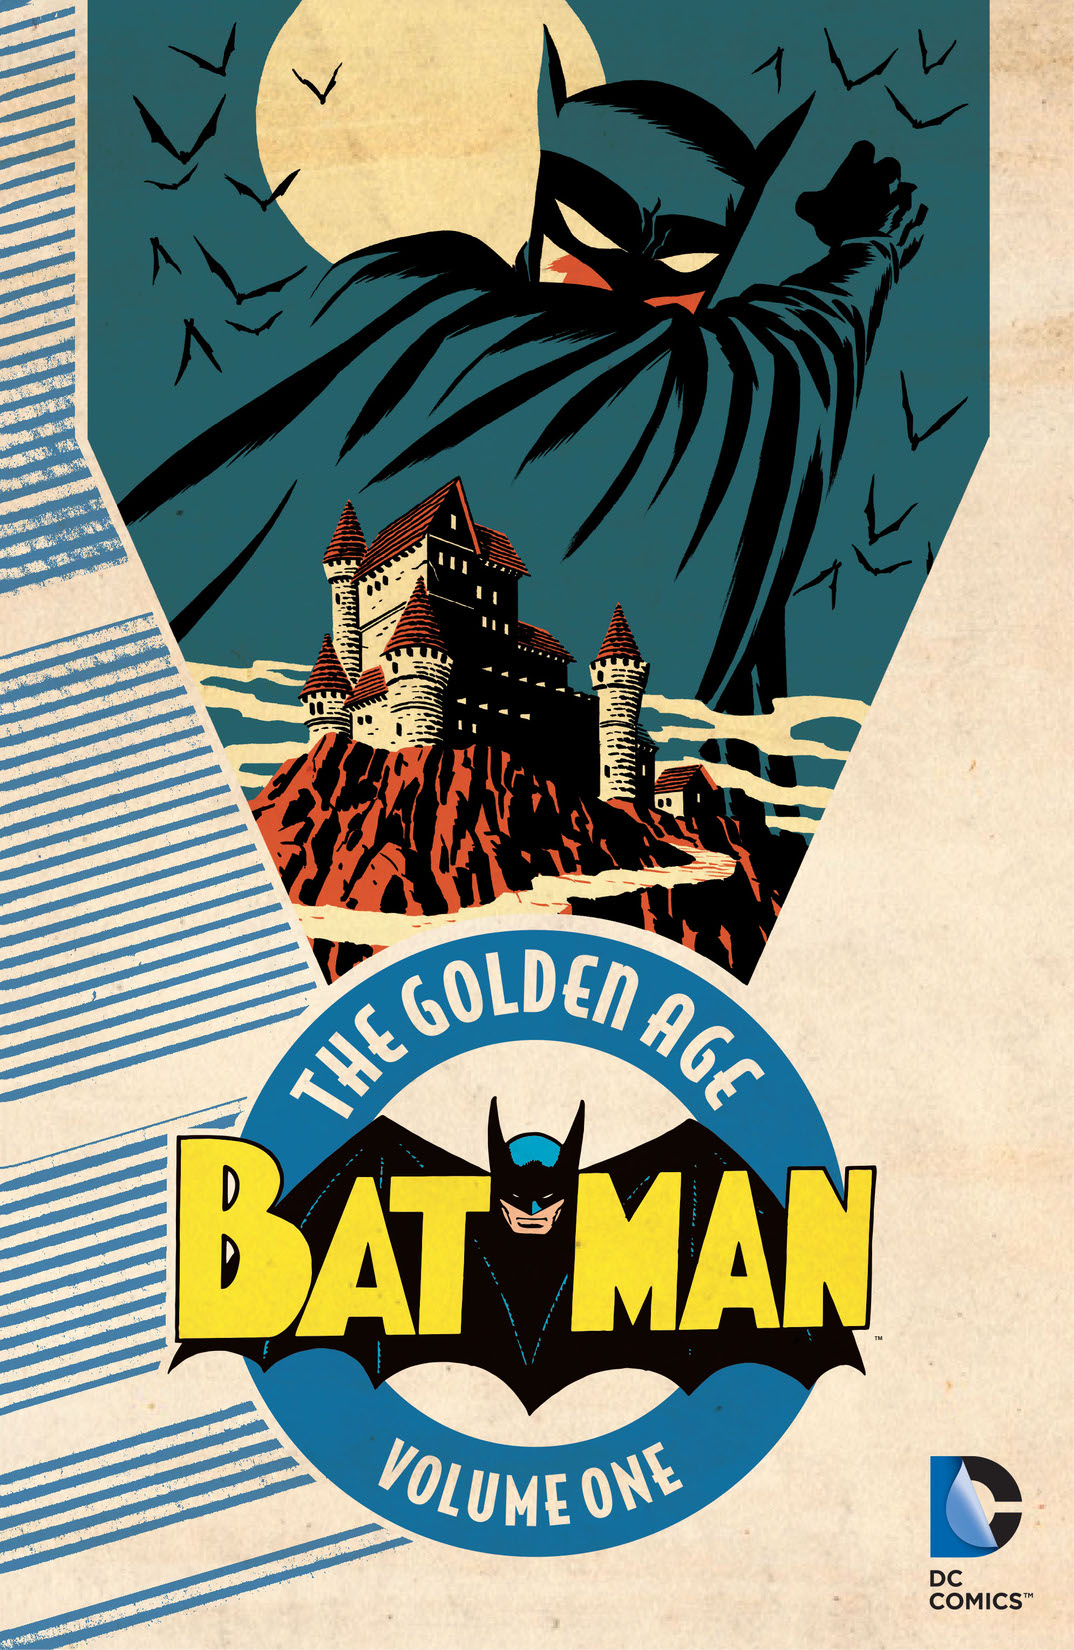 Batman: The Golden Age Vol. 1 preview images